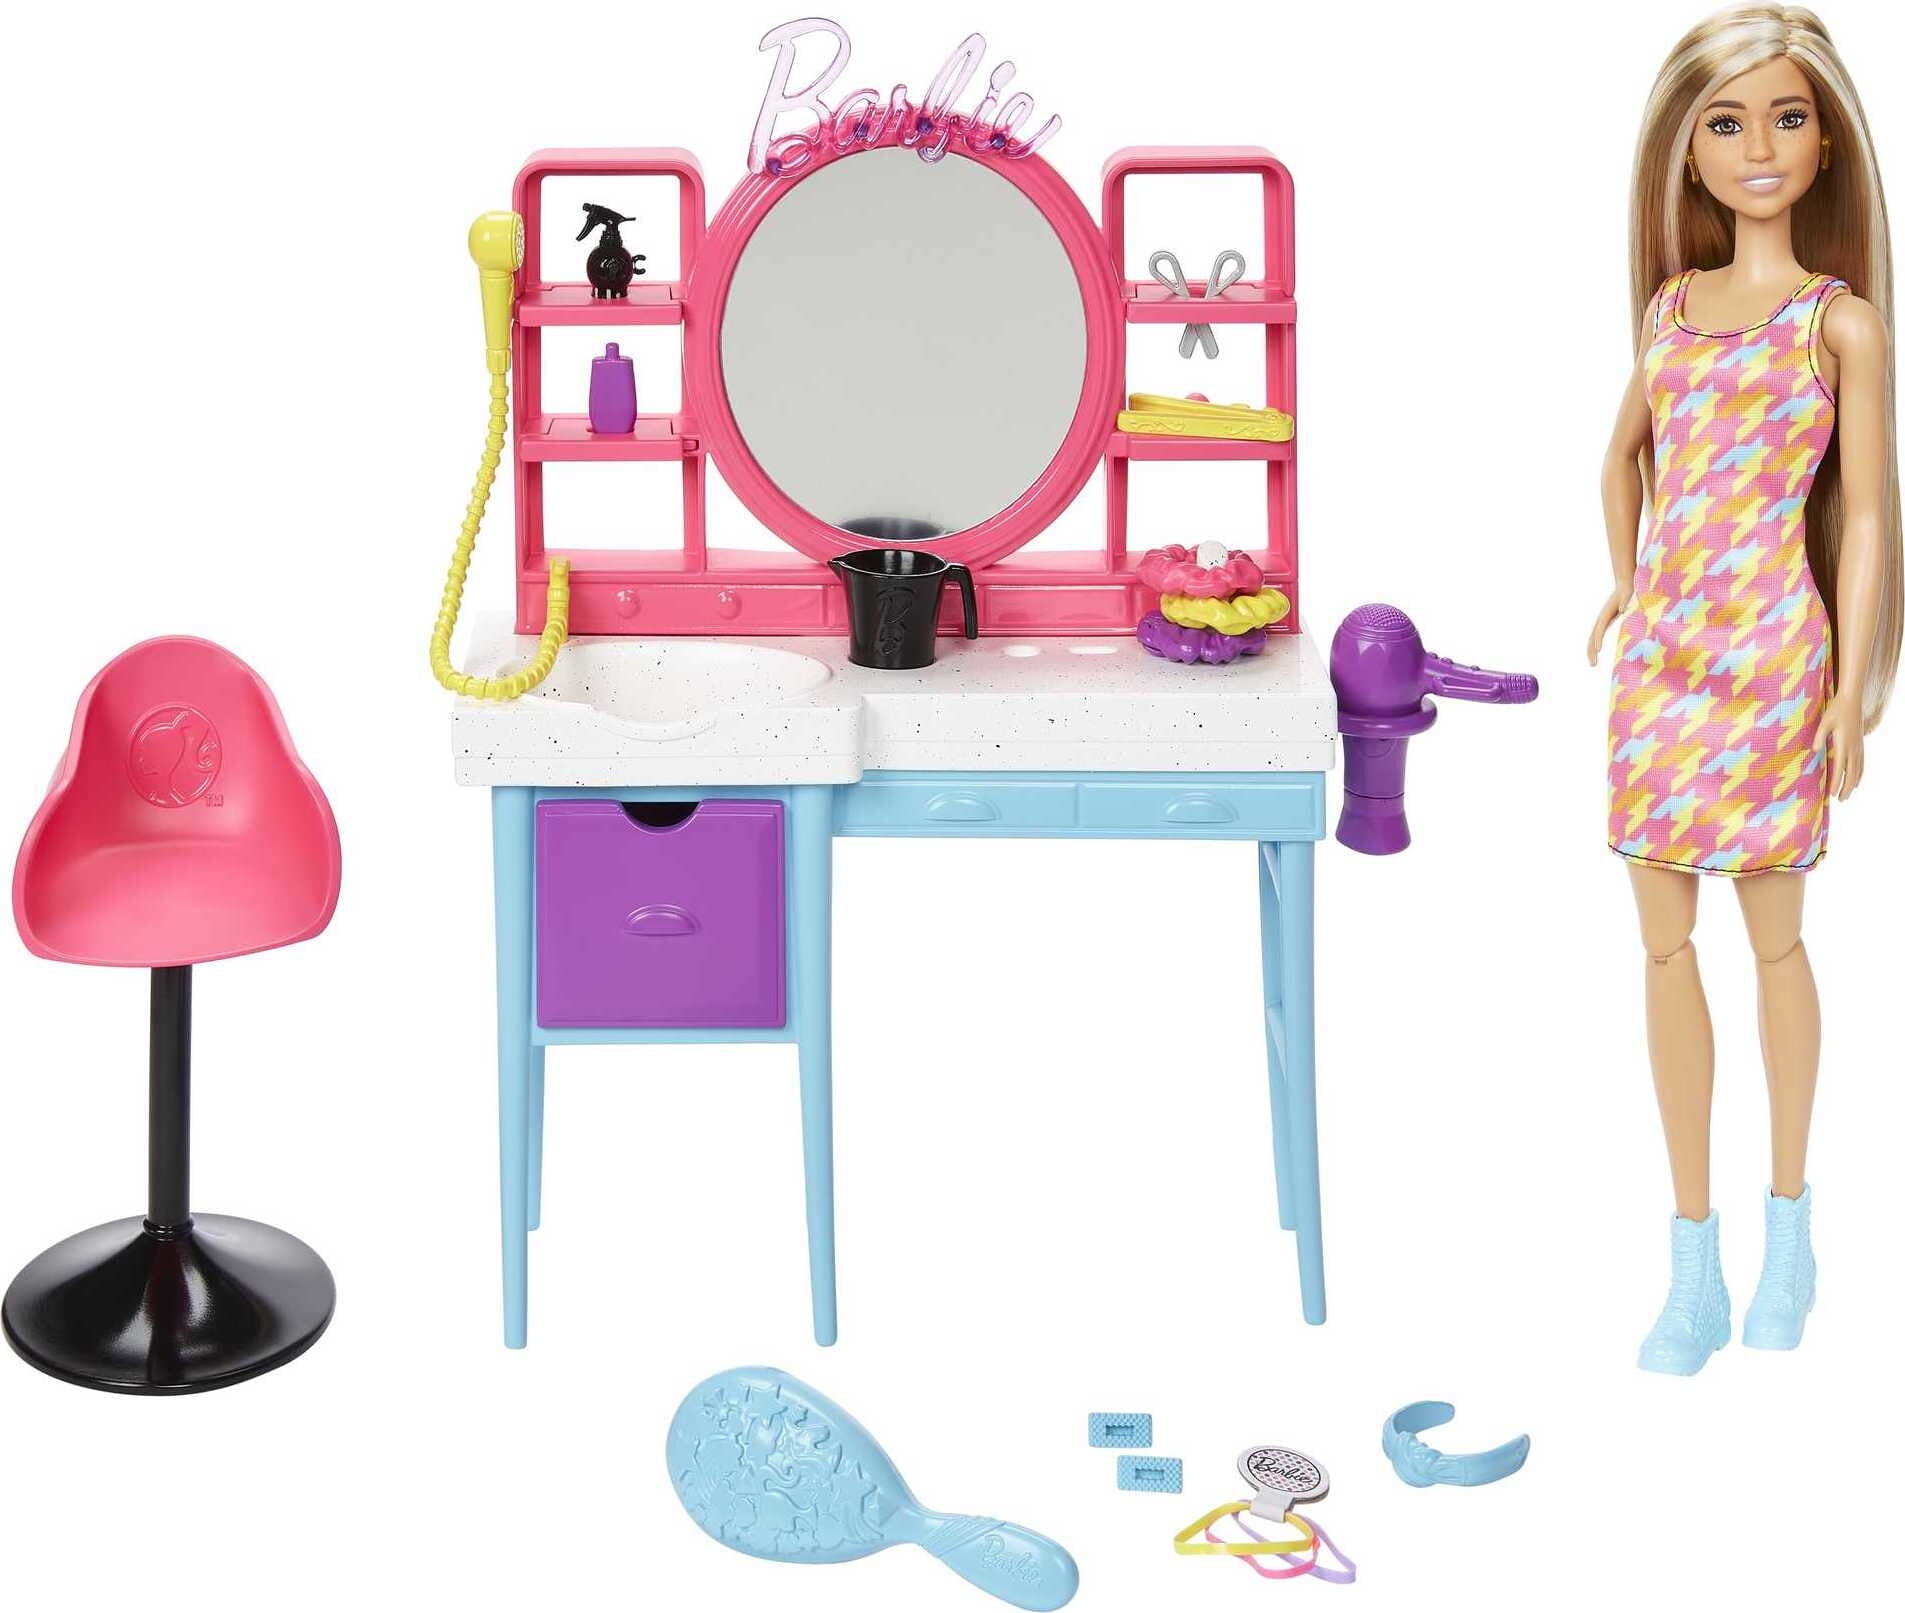 Barbie Doll And Hair Salon Playset